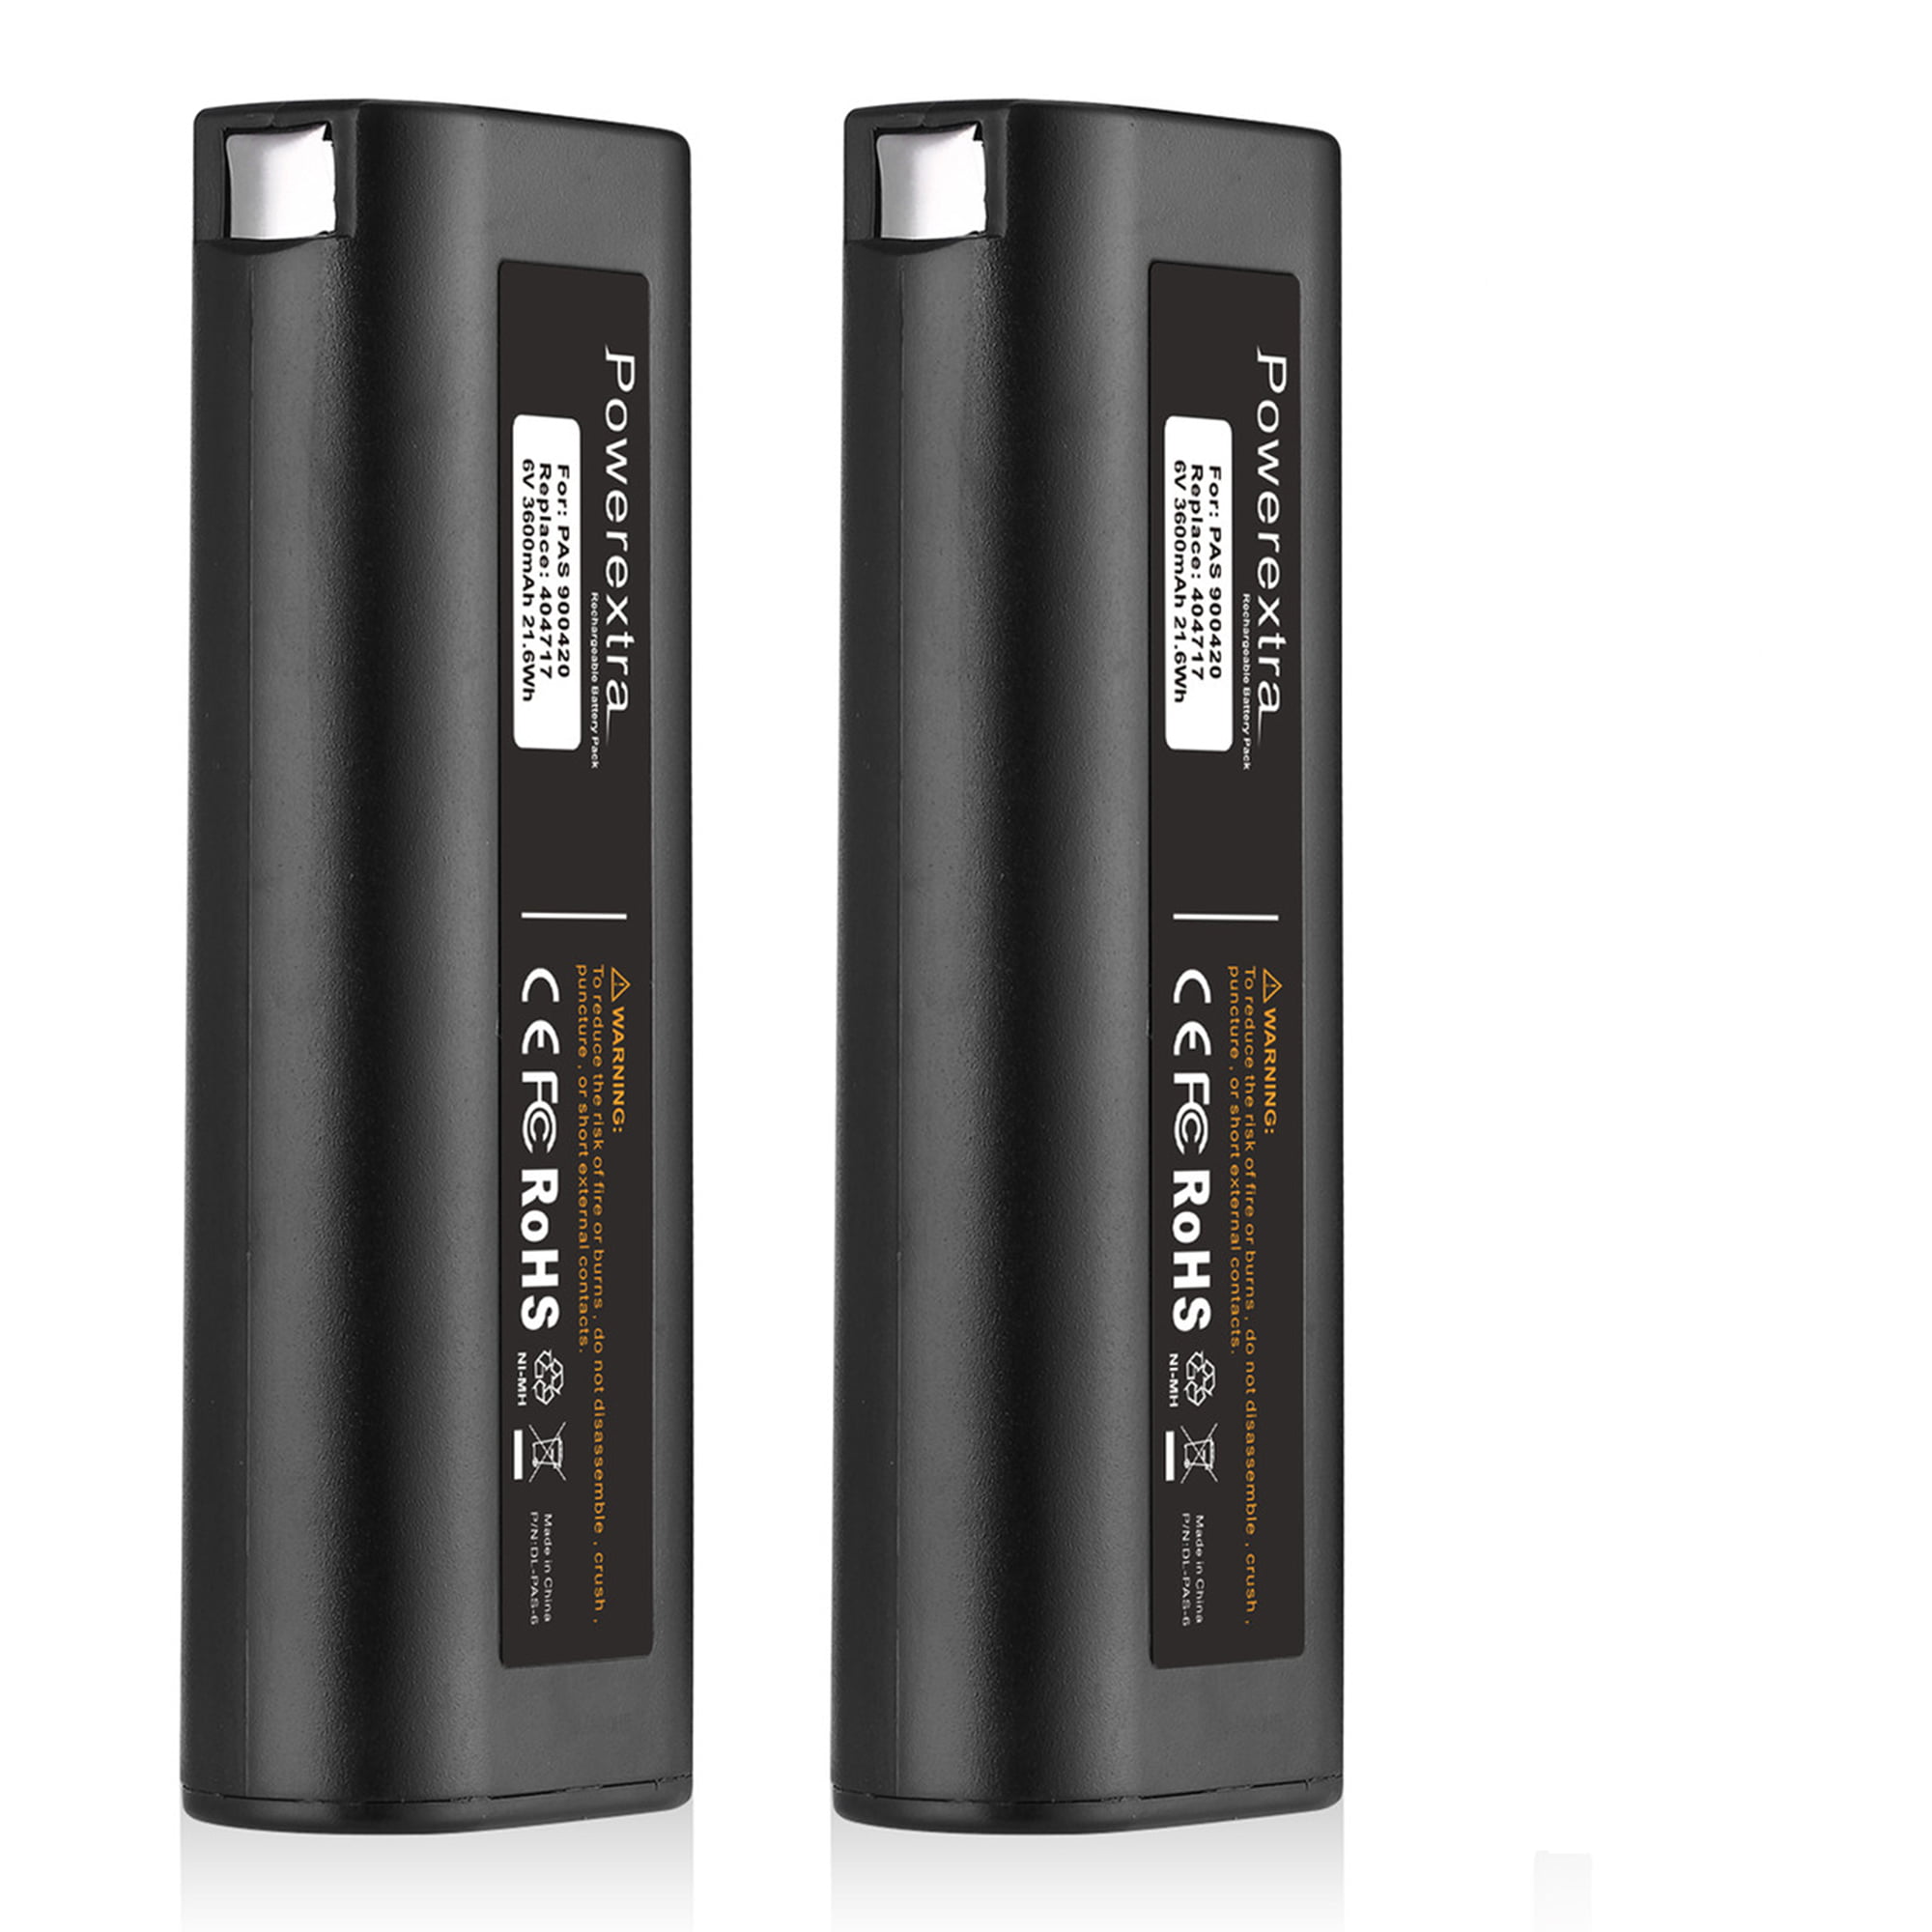 2 x 2500MAH 6V Battery for PASLODE 404717 900400 900420 900600 Nailer